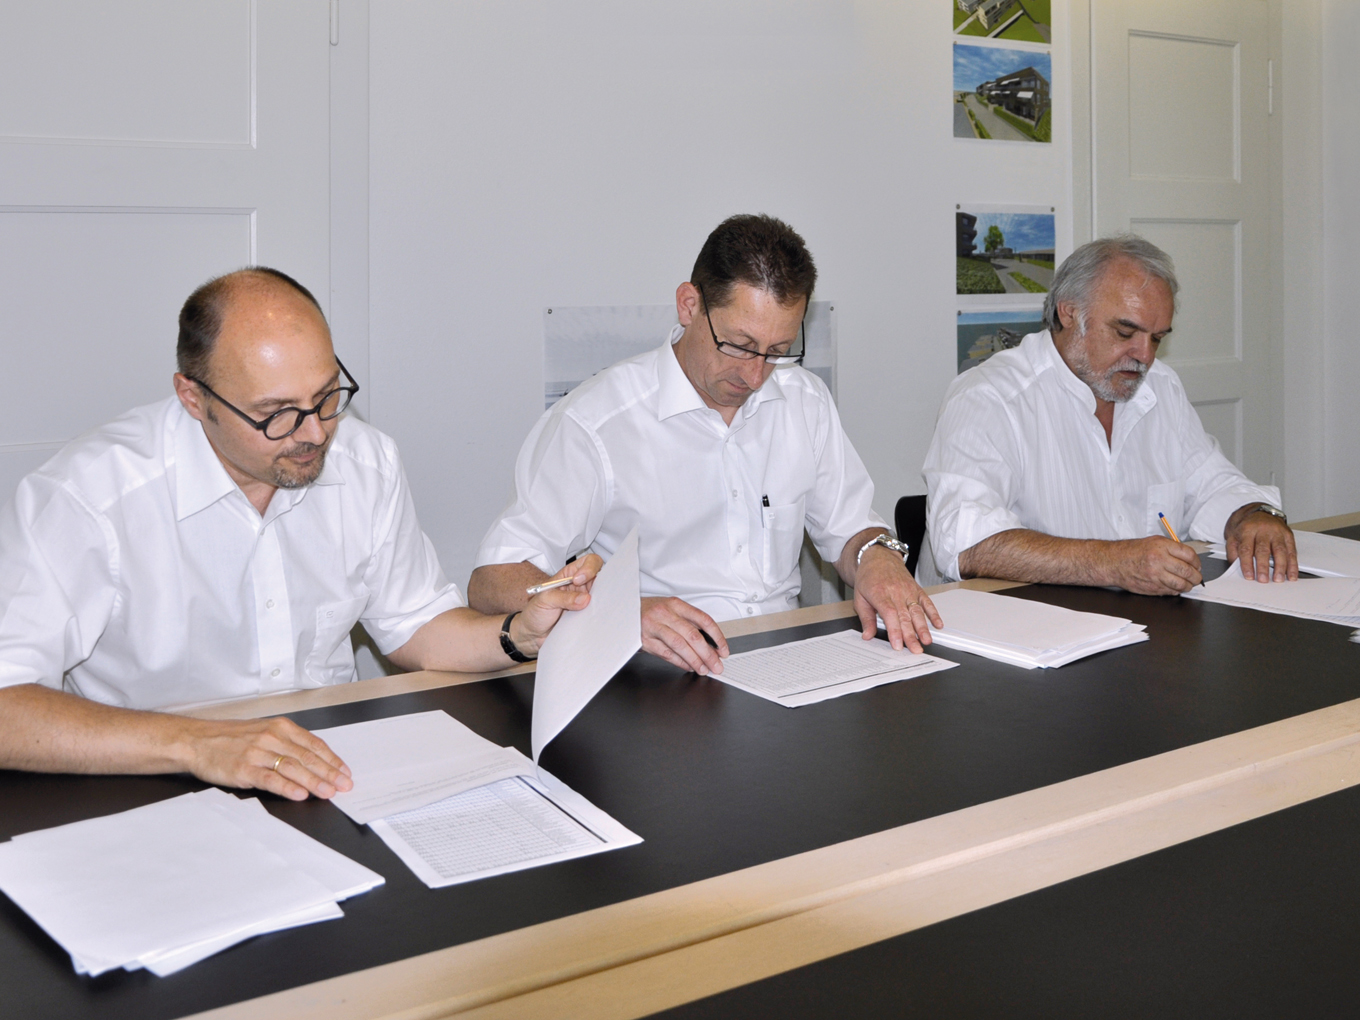 2011 Die rlc Gruppe feiert das 50-jährige Jubiläum und übernimmt im Rahmen einer Nachfolgeregelung die omg+ partner architekten ag in Winterthur als eigenständiges Unternehmen.